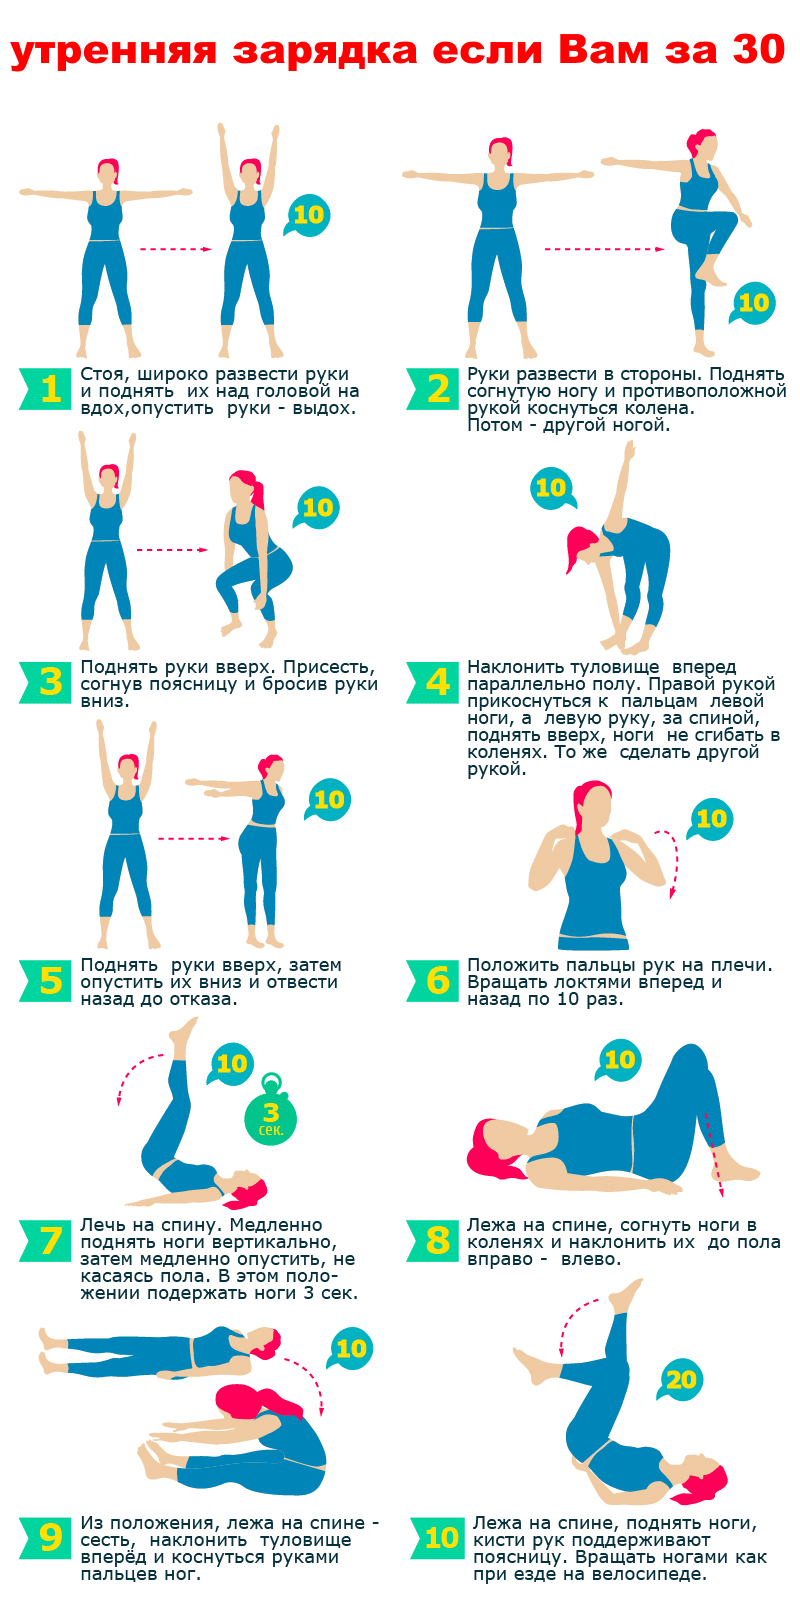 рисунок с упражнениями утренней гимнастики для зрелых женщин за 30